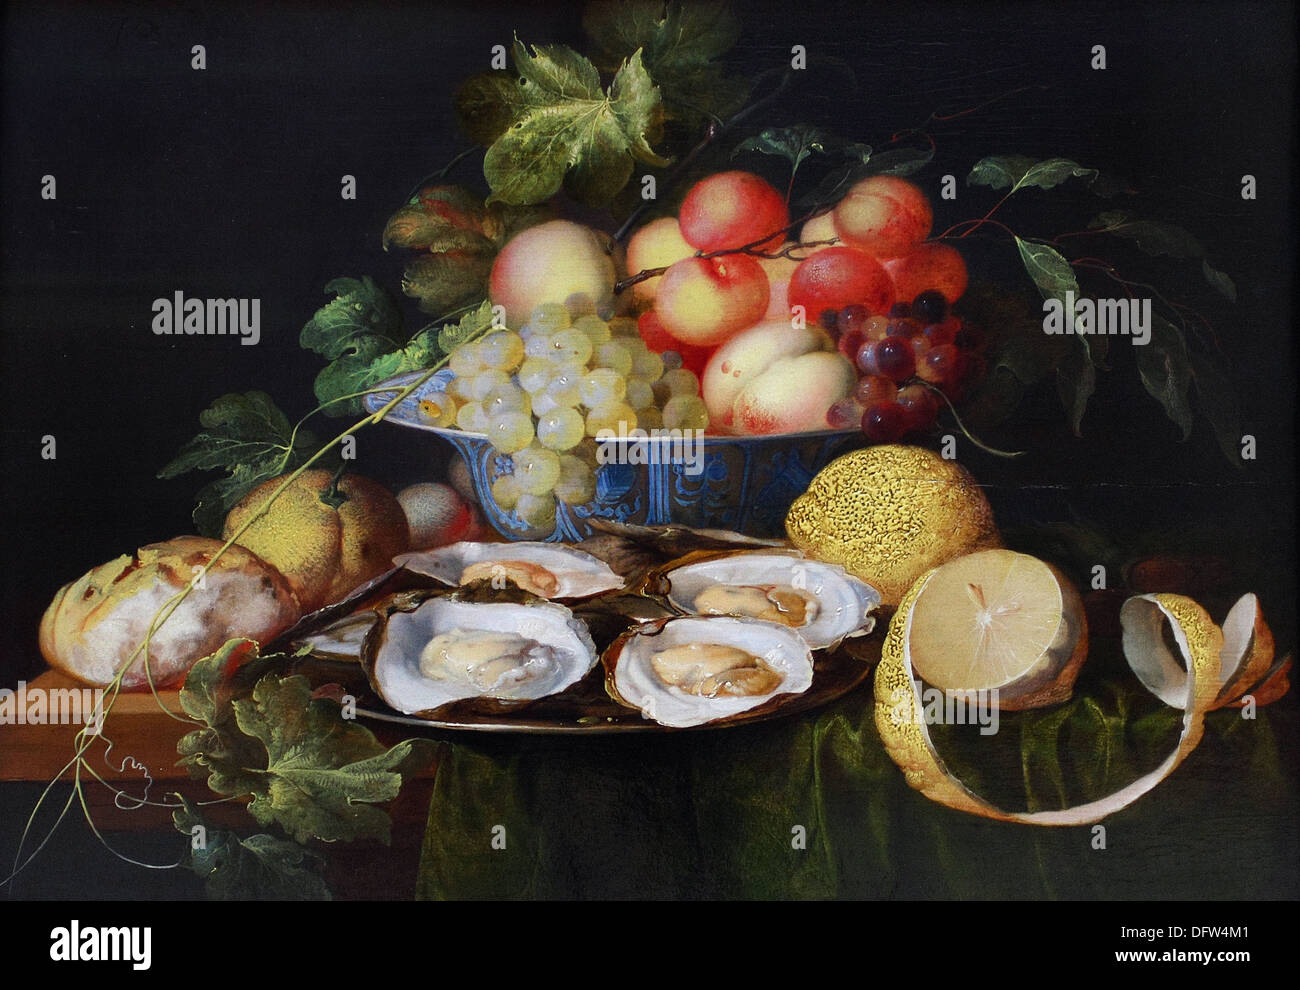 Jan Davidsz de HEEM - Nature morte aux fruits et aux huîtres - 1640 - Musée des beaux-arts - Budapest, Hongrie. Banque D'Images